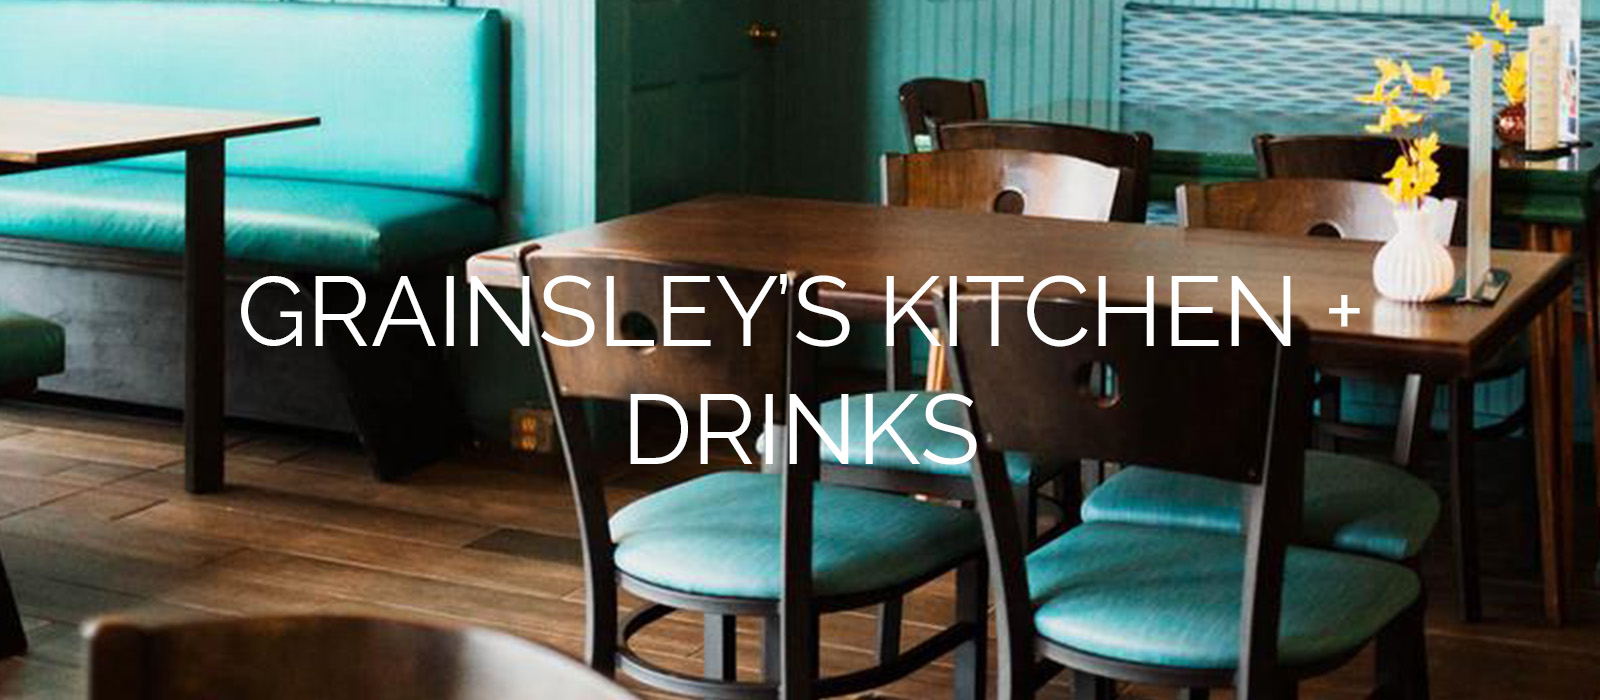 Grainsley's Kitchen + Drinks